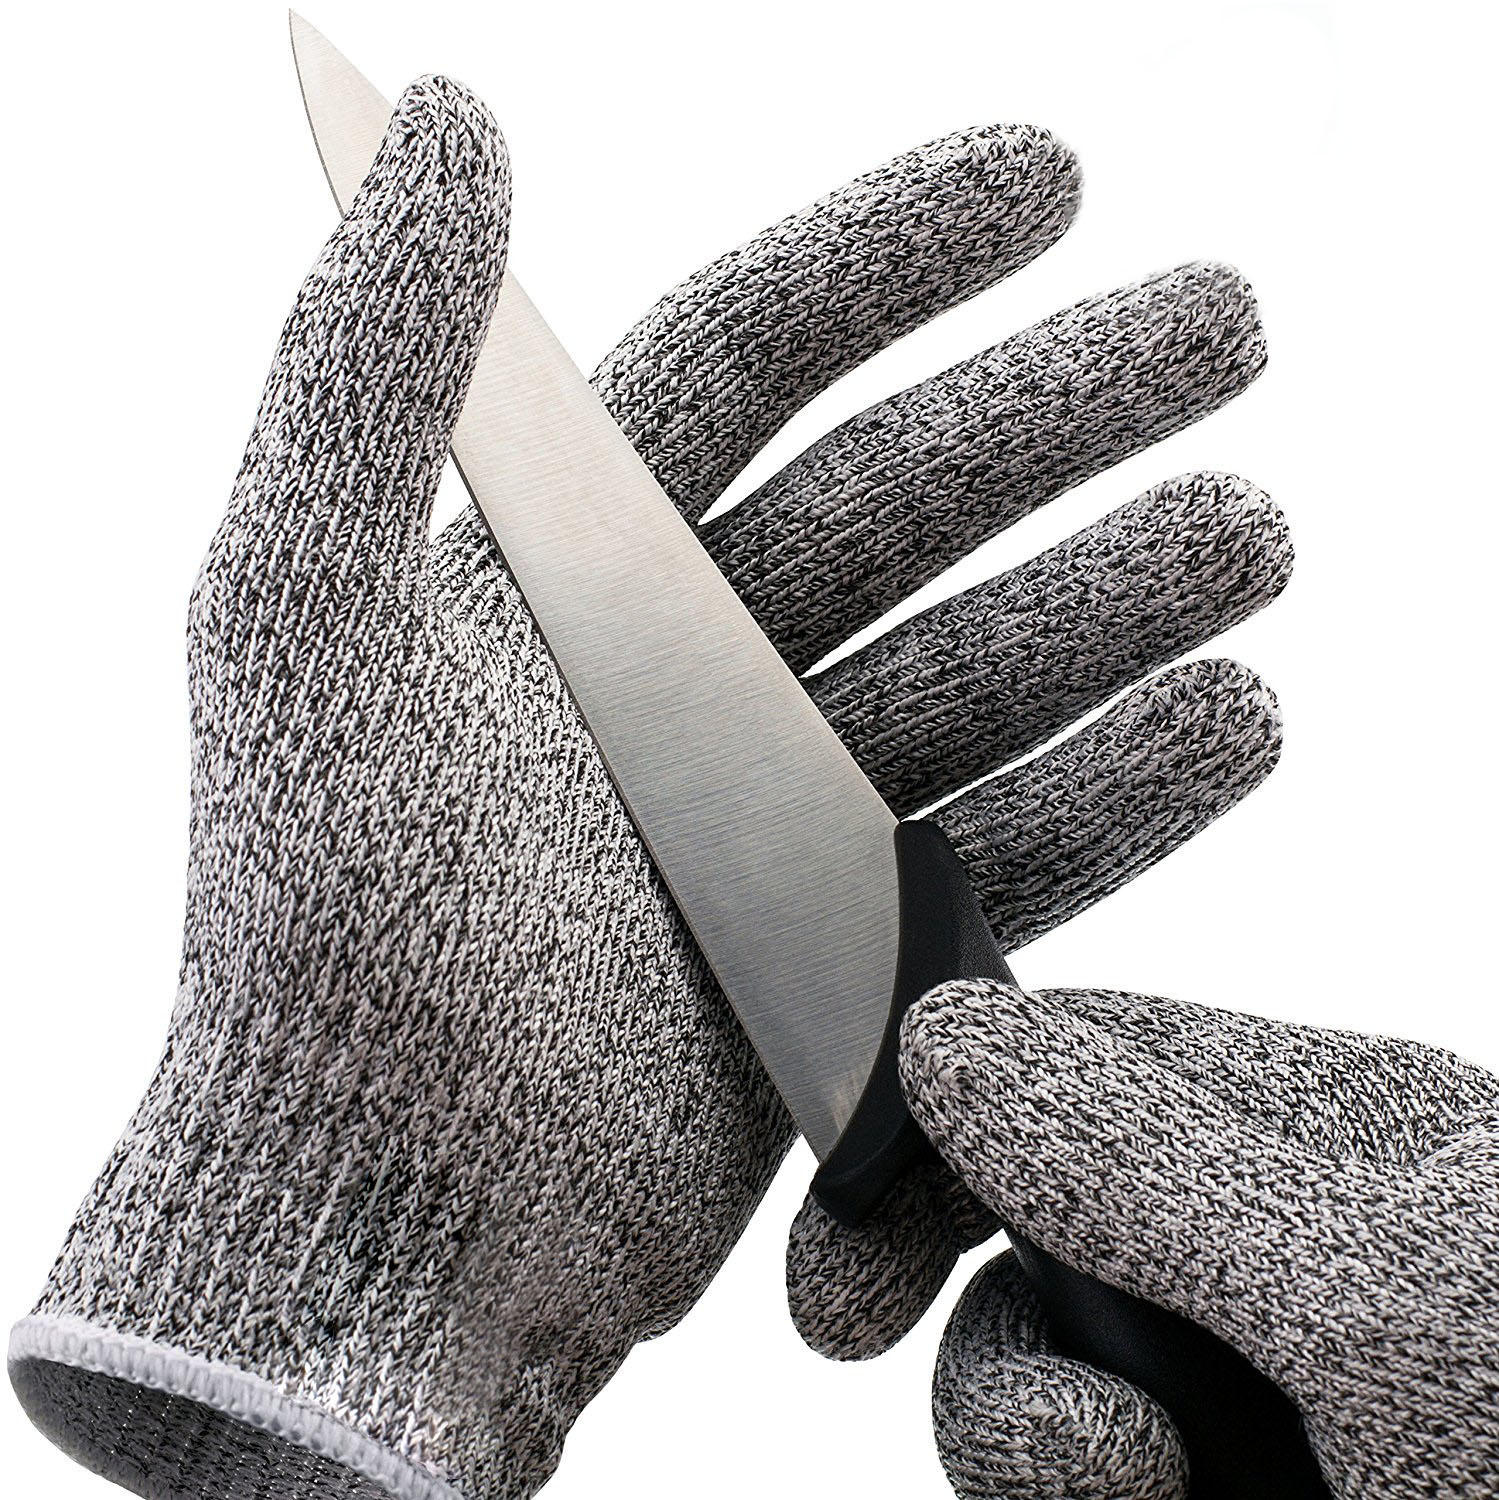 KC-CG01 1 paar HPPE High Performance Level 5 Protection Food Grade snijbestendige handschoenen